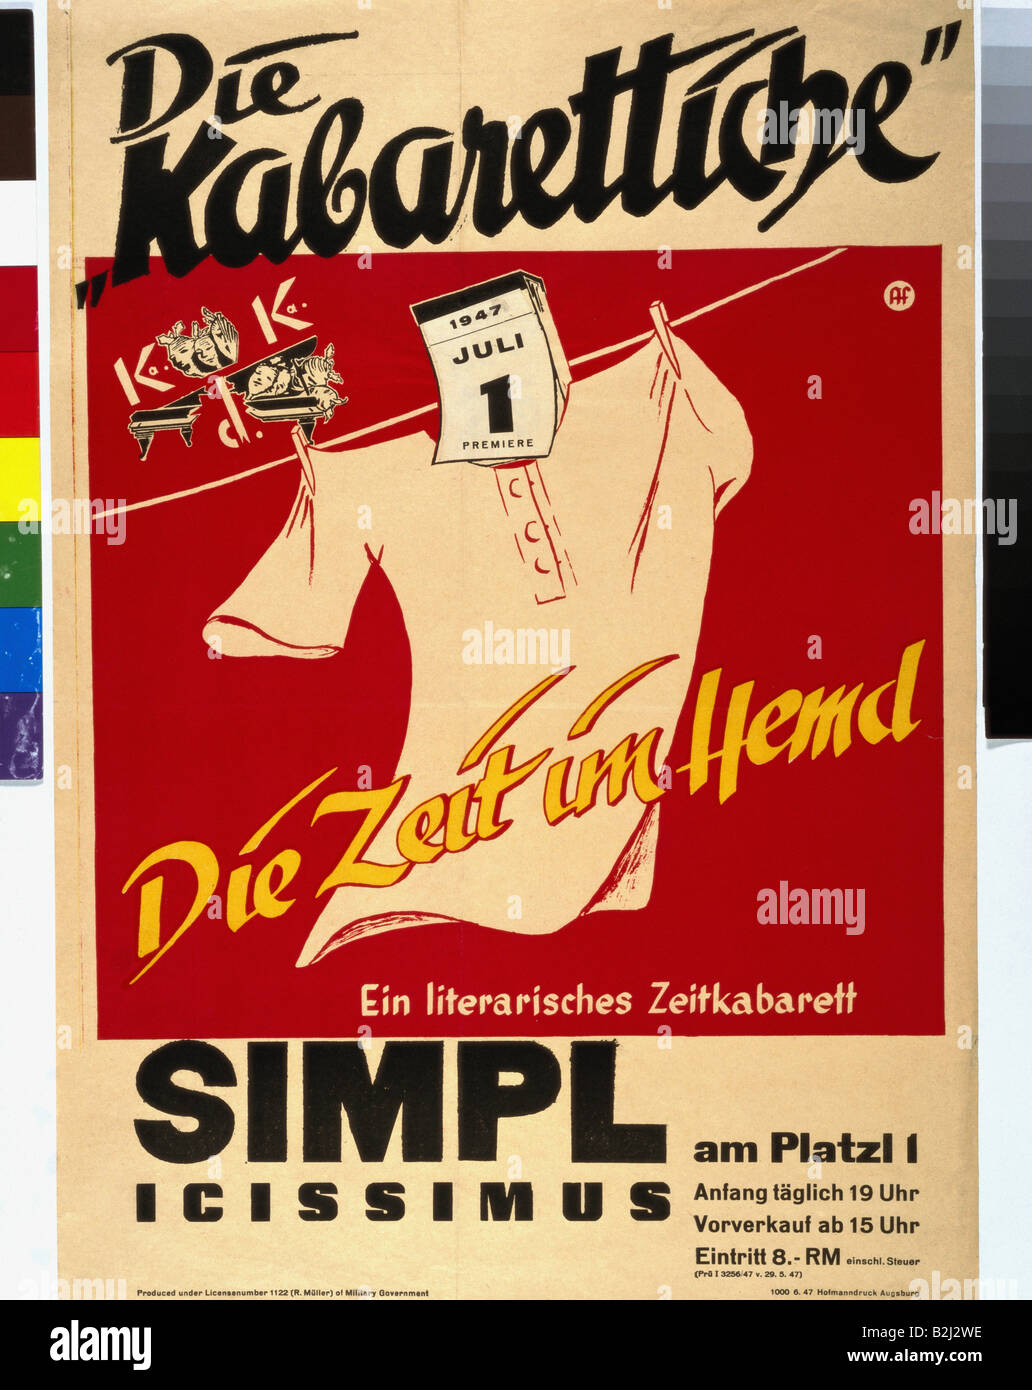 Werbung, Theater/Theater, Simplicissimus, die Kabarettische, München, 1947, Plakat, Stockfoto